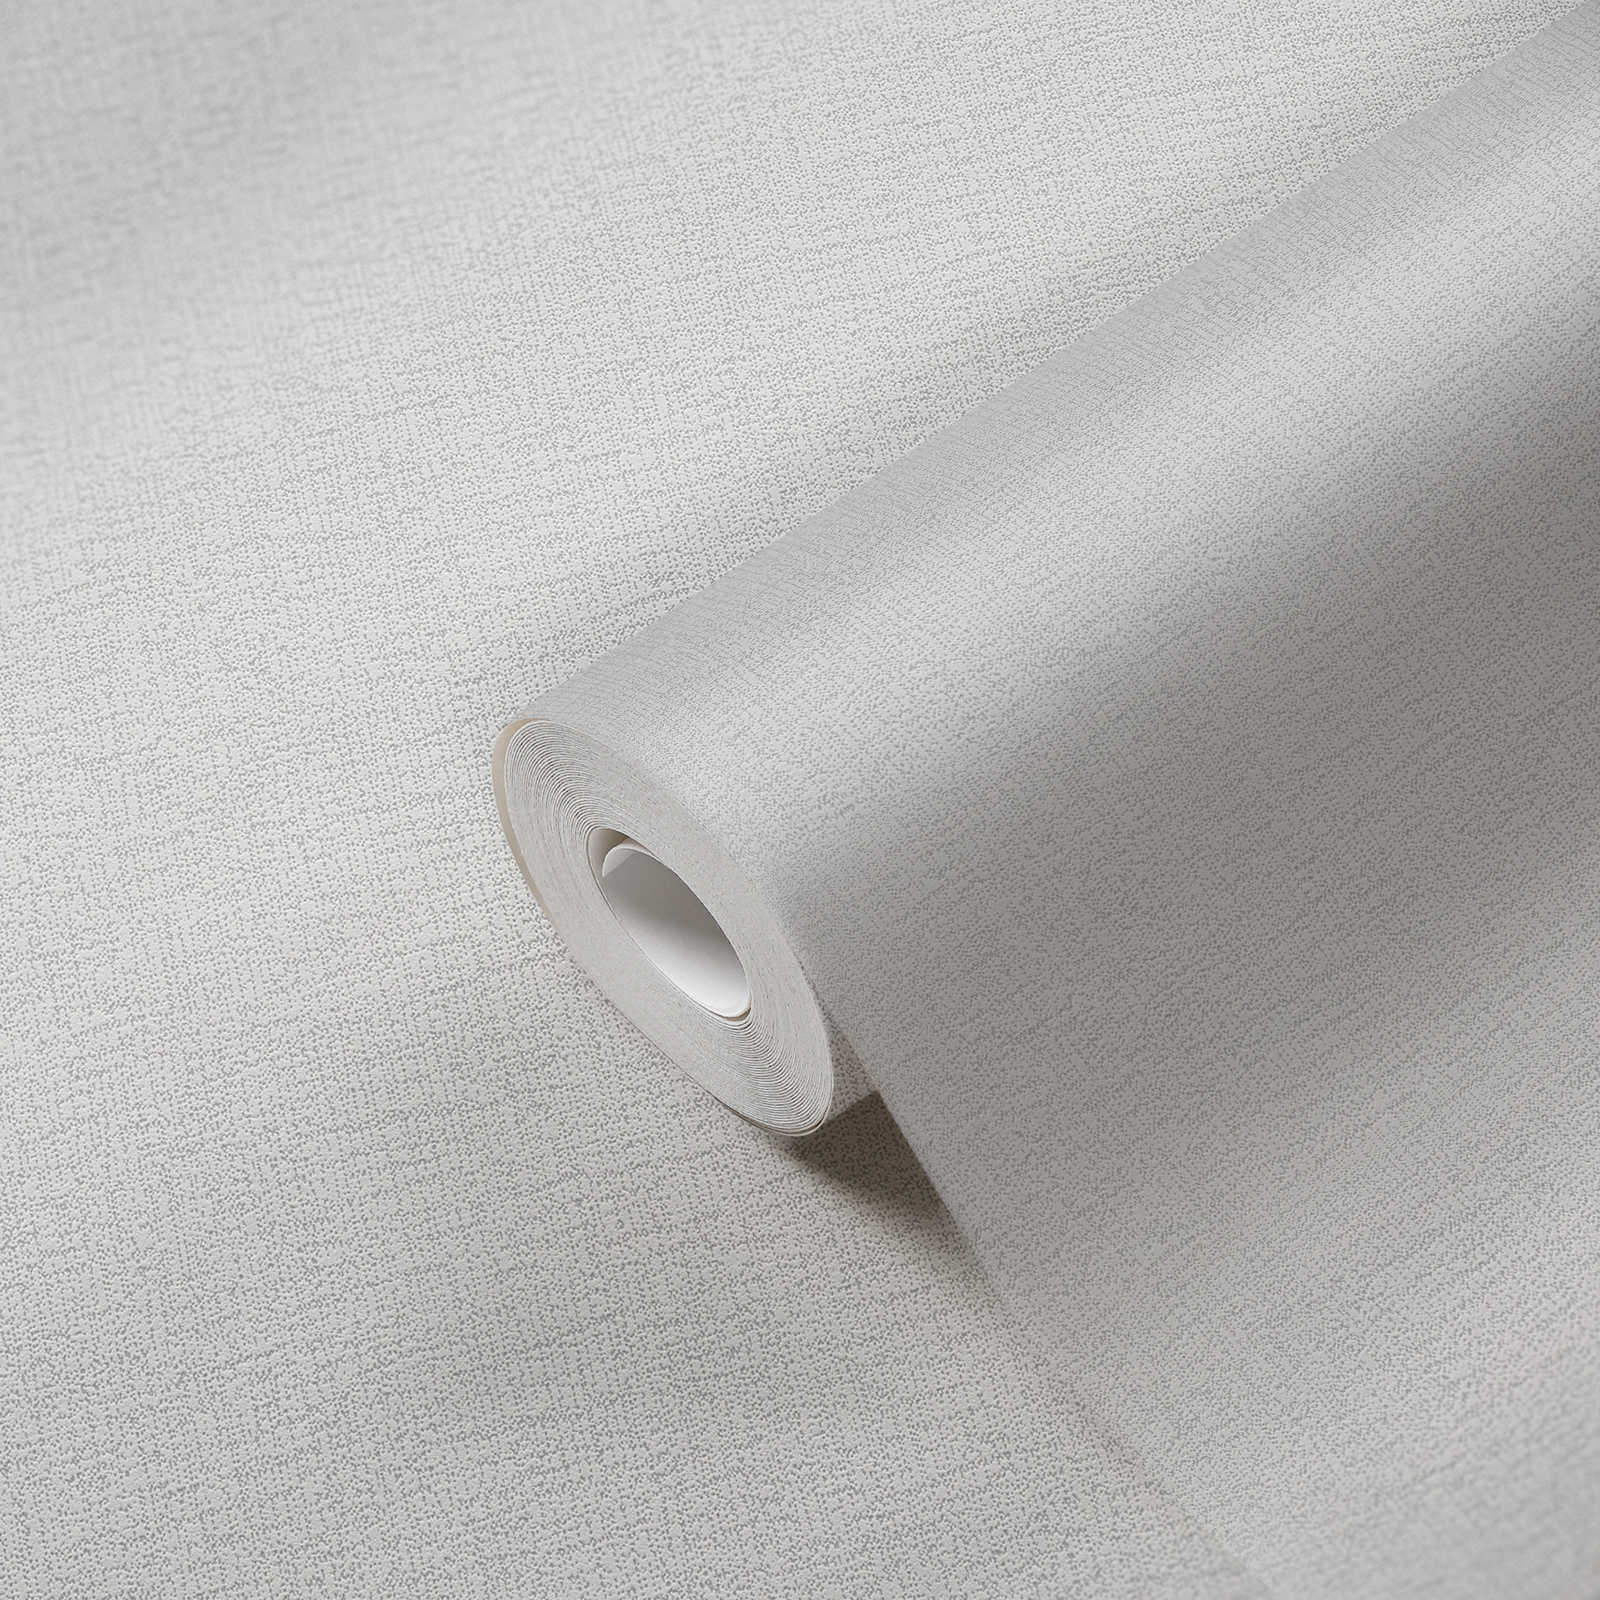             Papier peint intissé uni gris neutre avec motif texturé - gris
        